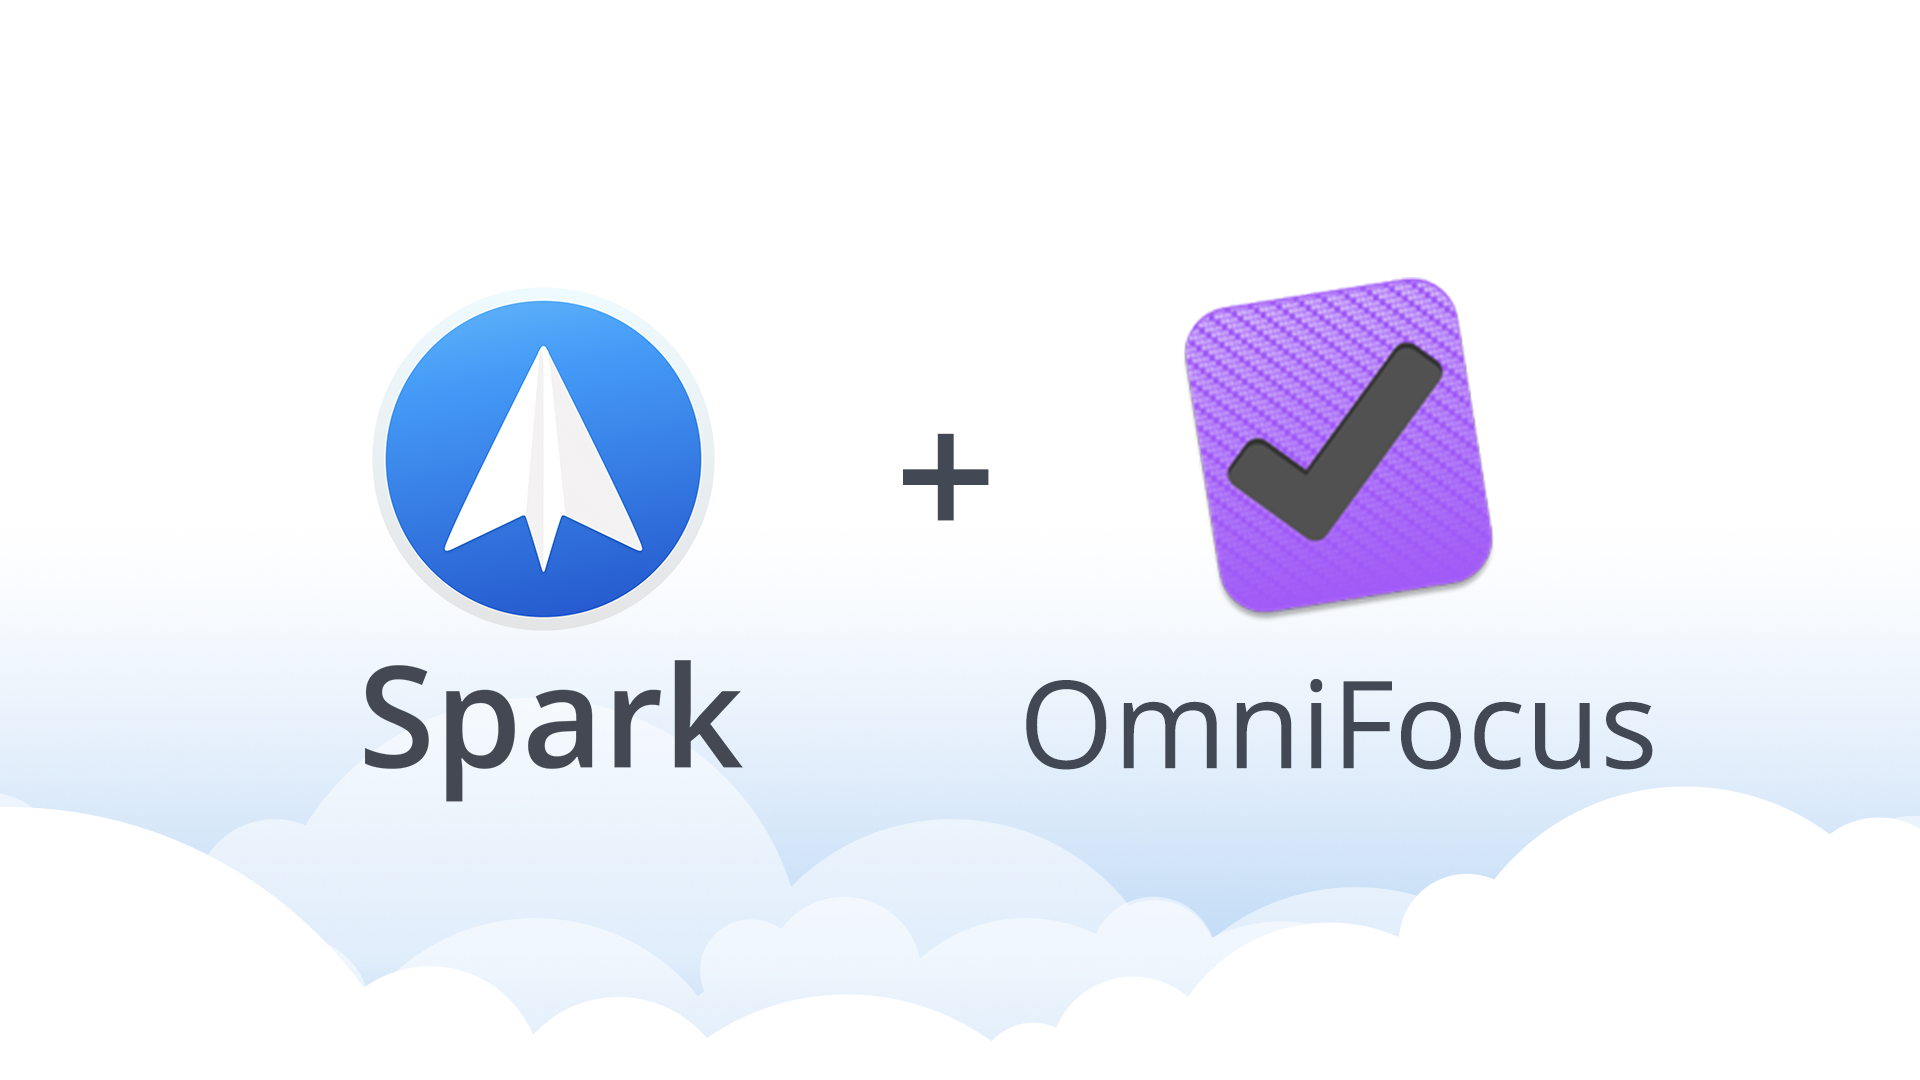 Spark + OmniFocus logos